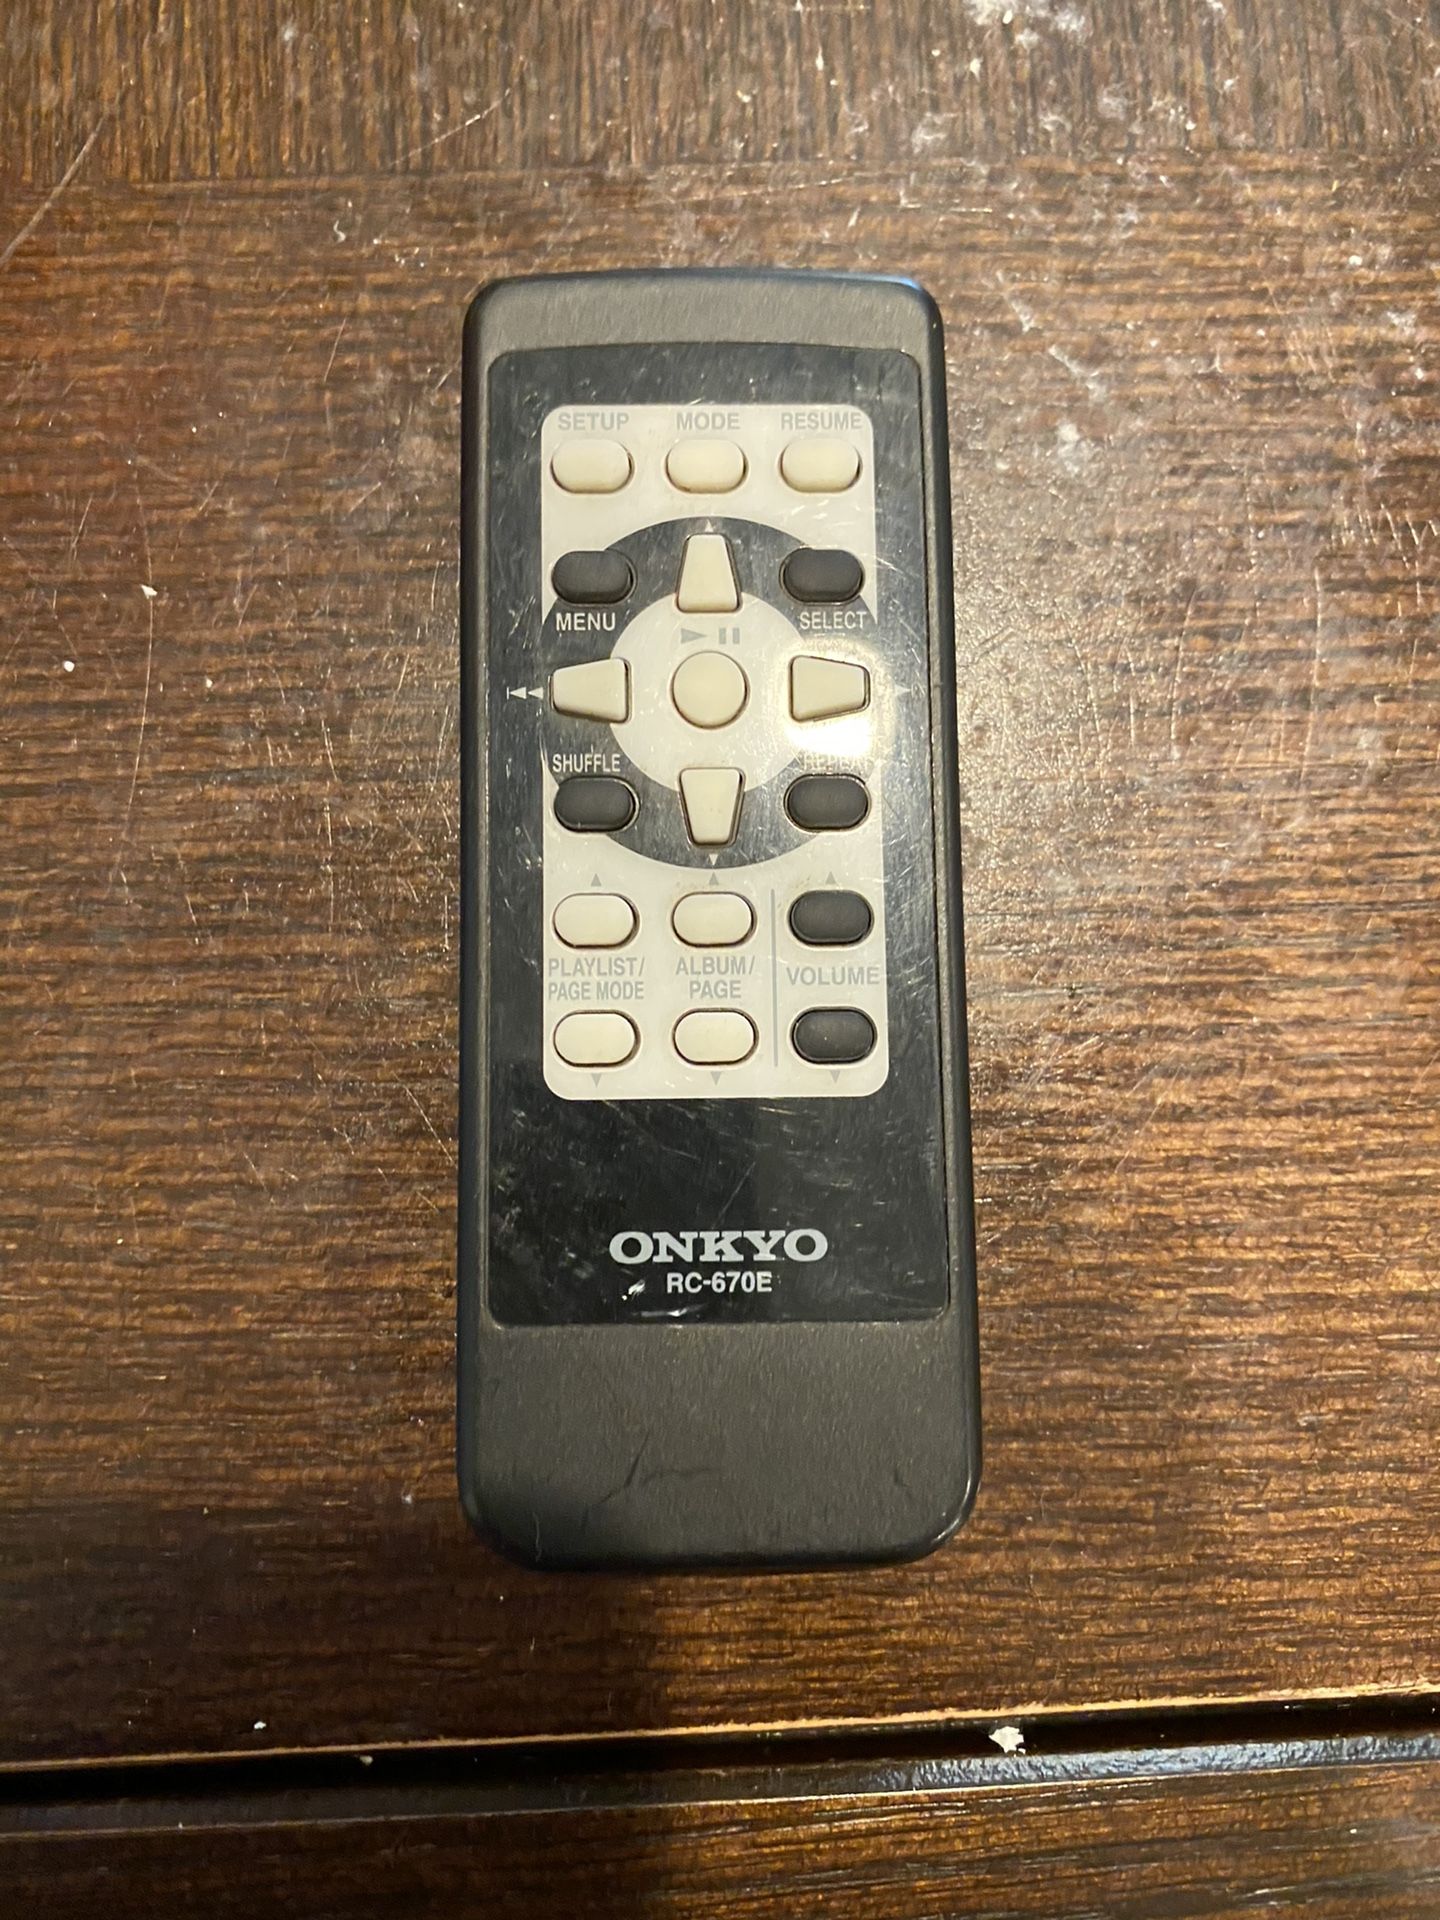 Onkyo RC-670E remote control